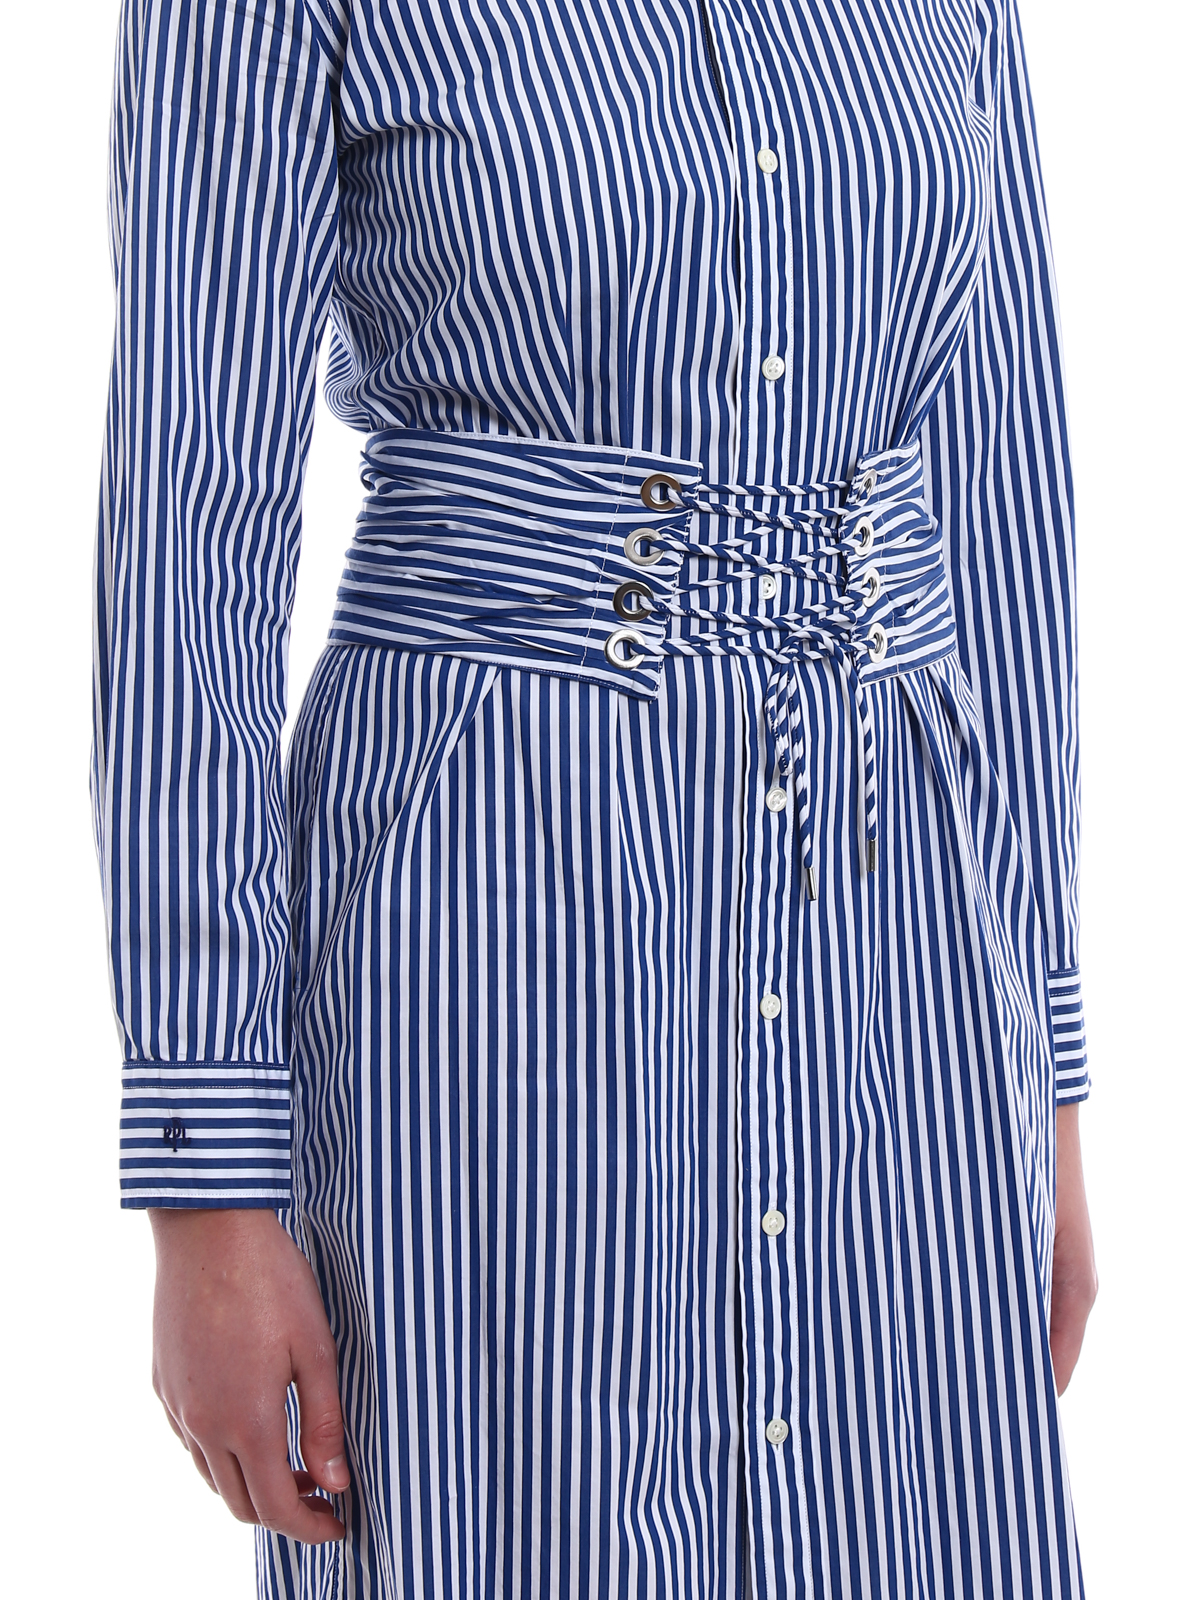 Short dresses Polo Ralph Lauren - Striped cotton shirt dress - 211695037001